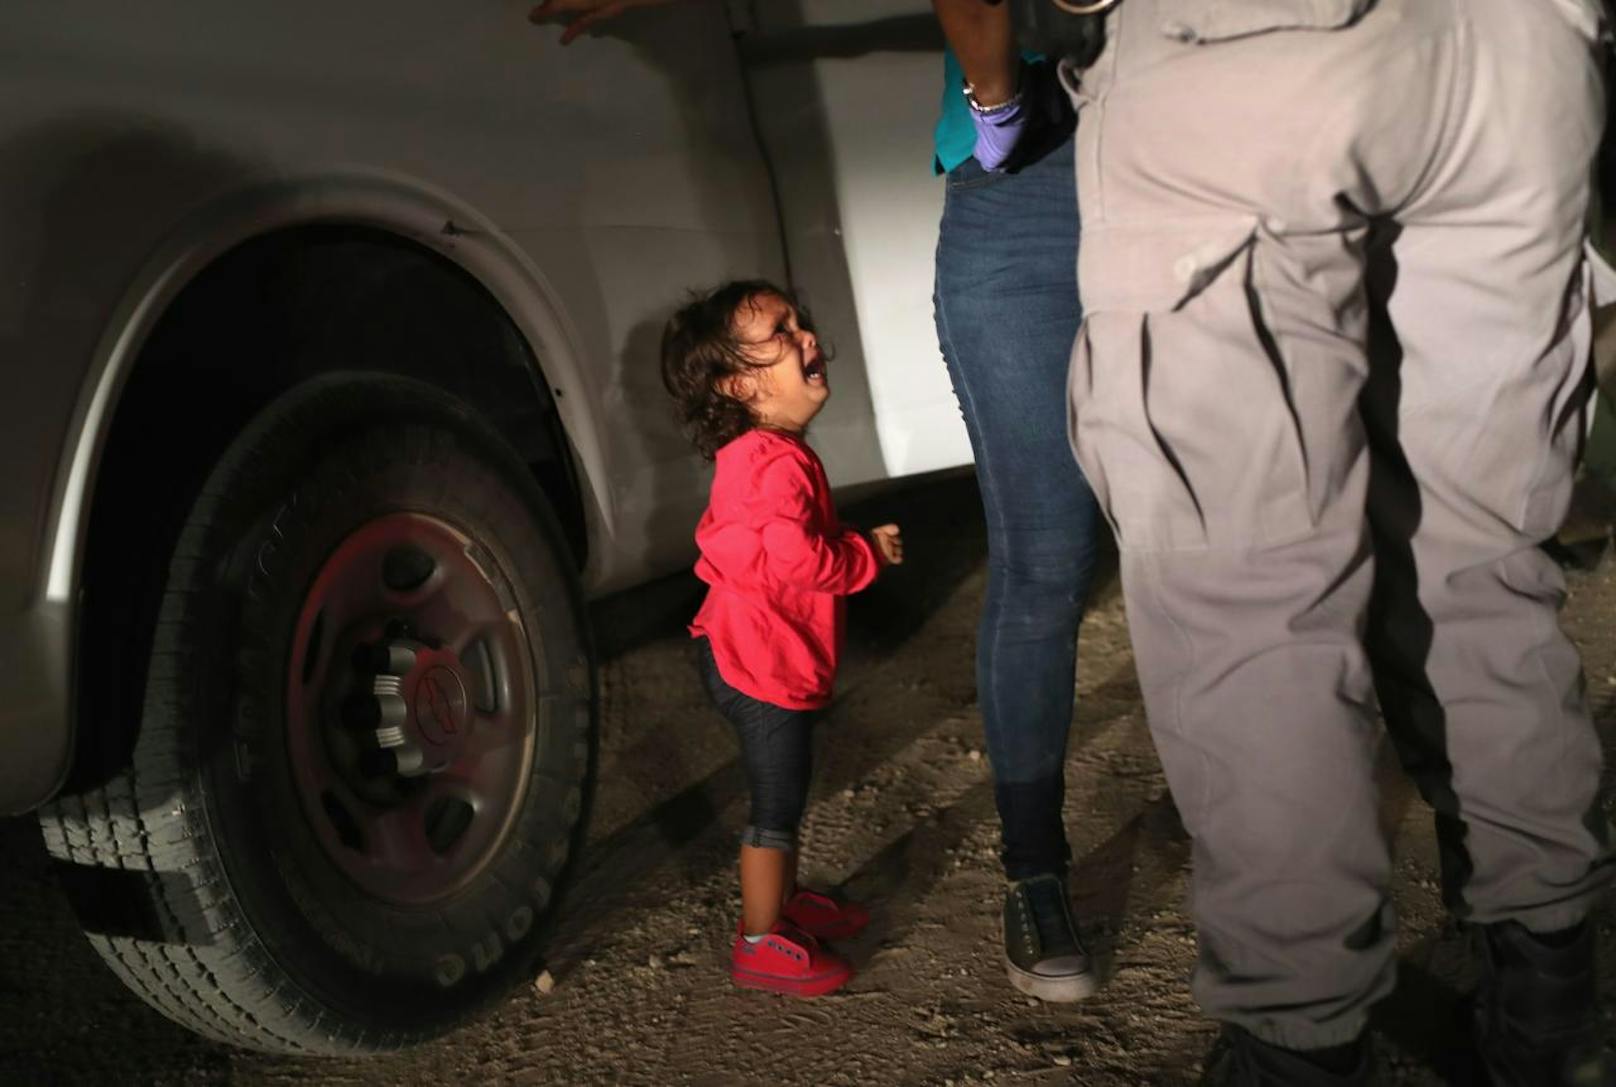 Der Fotograf glaubt, dass die Familien an der Grenze "keine Ahnung" hatten, dass sie wohl bald getrennt werden.